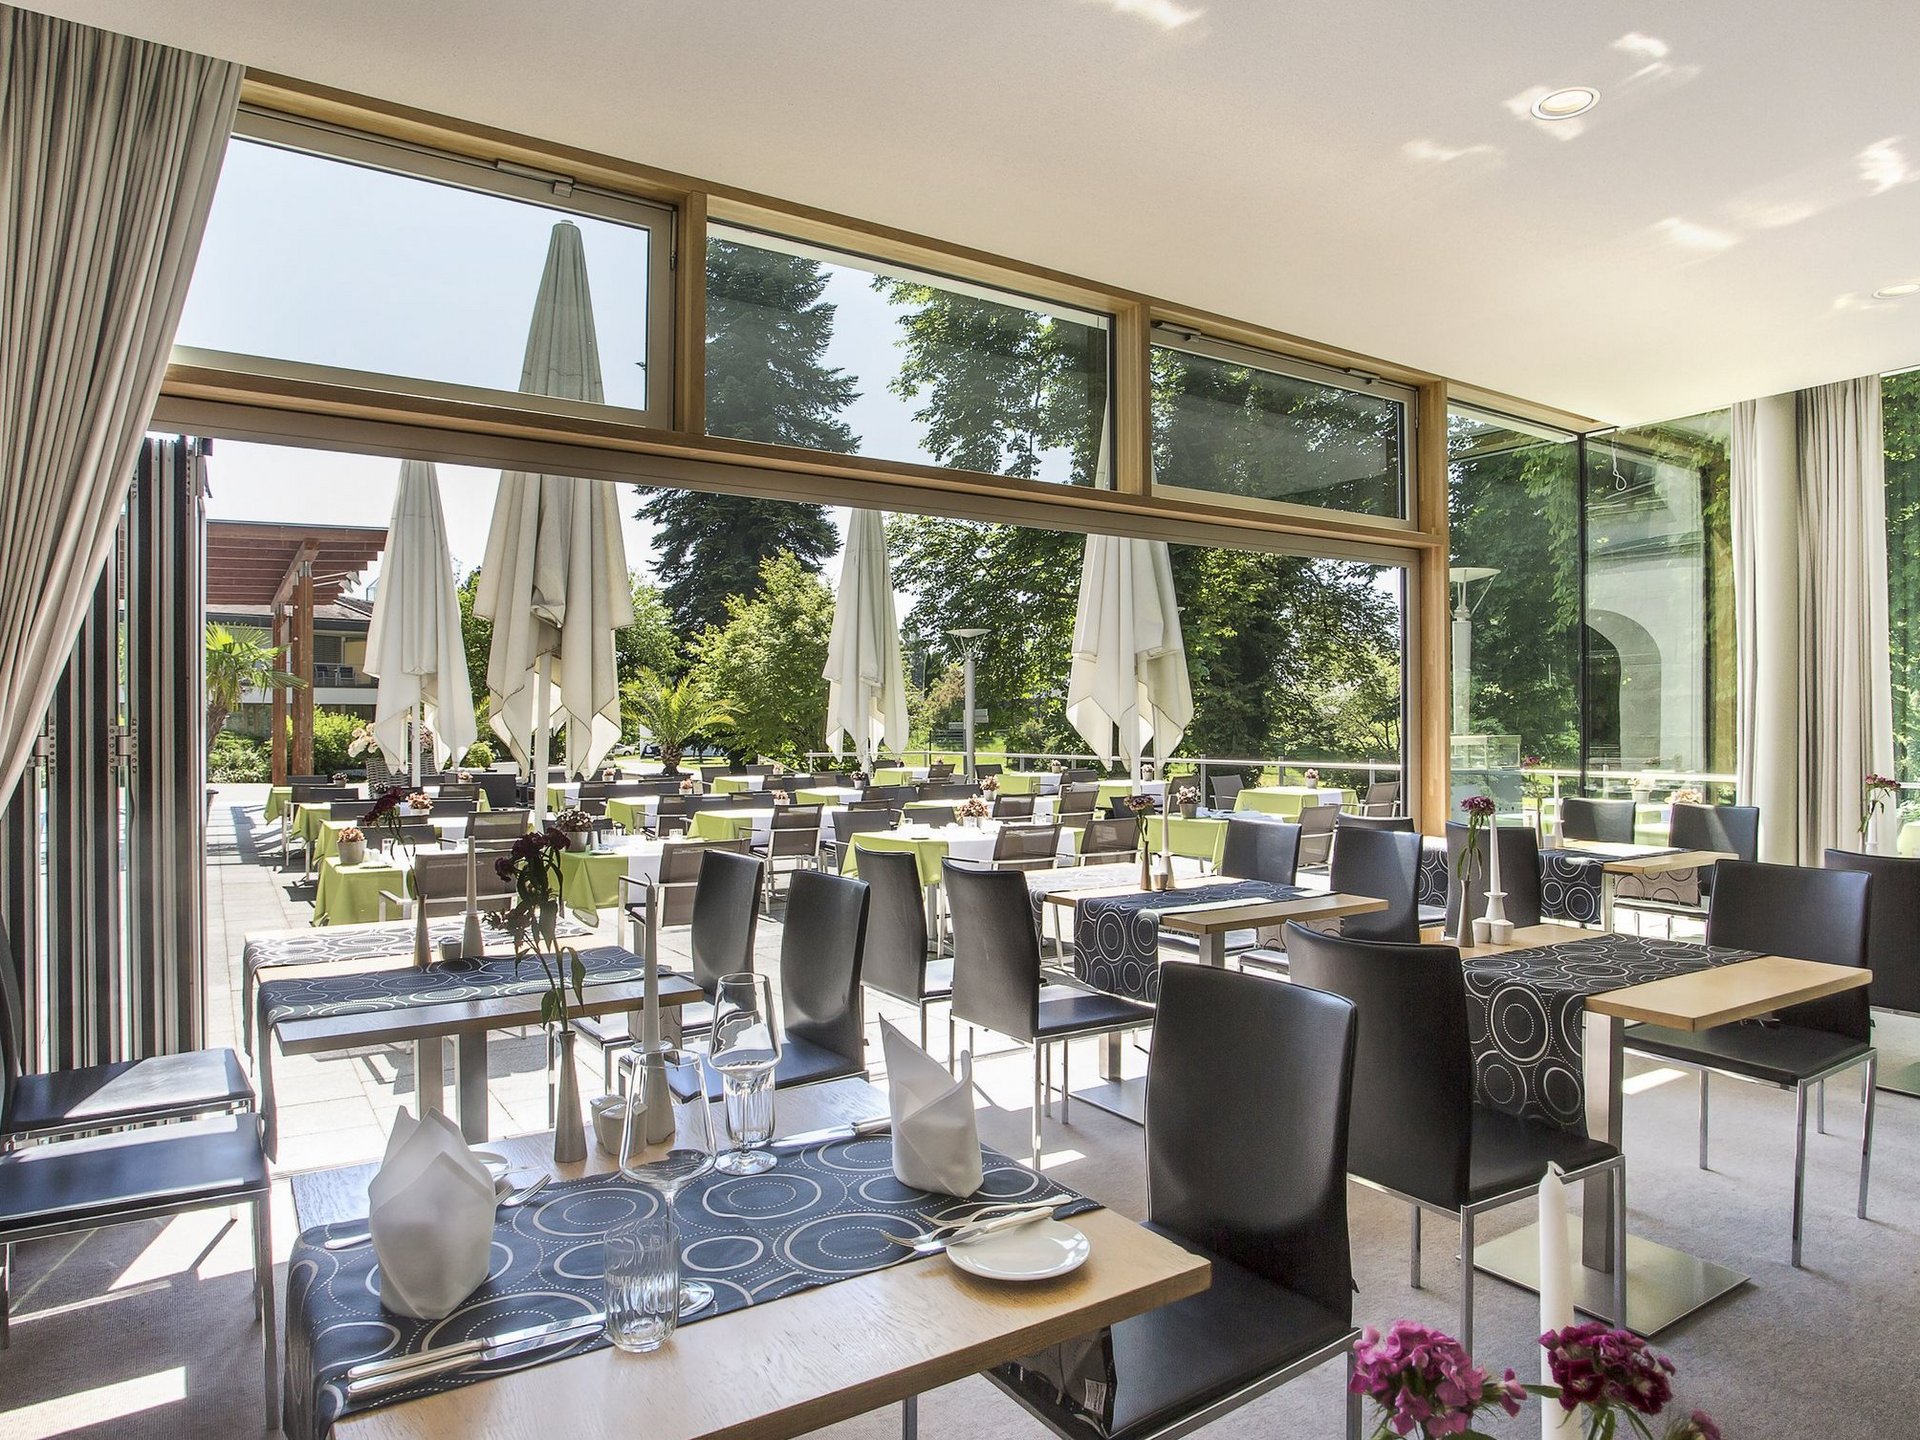 Restaurants in Biberach: Parkrestaurant & Feuerstein